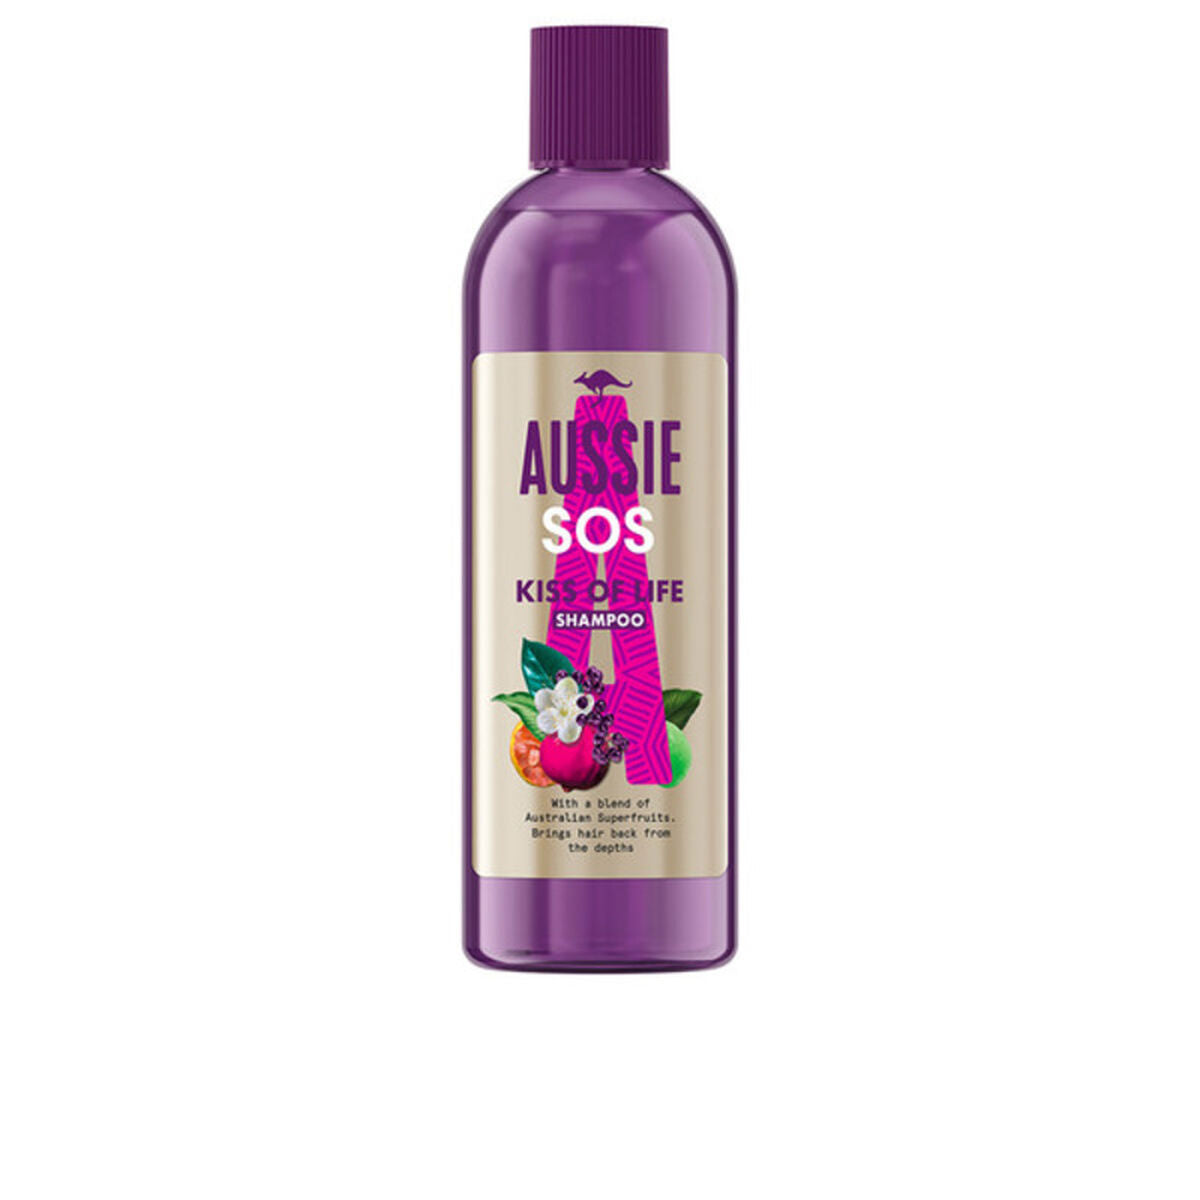 Restorativni šampon Aussie Sos Deep Repair 290 ml (290 ml)